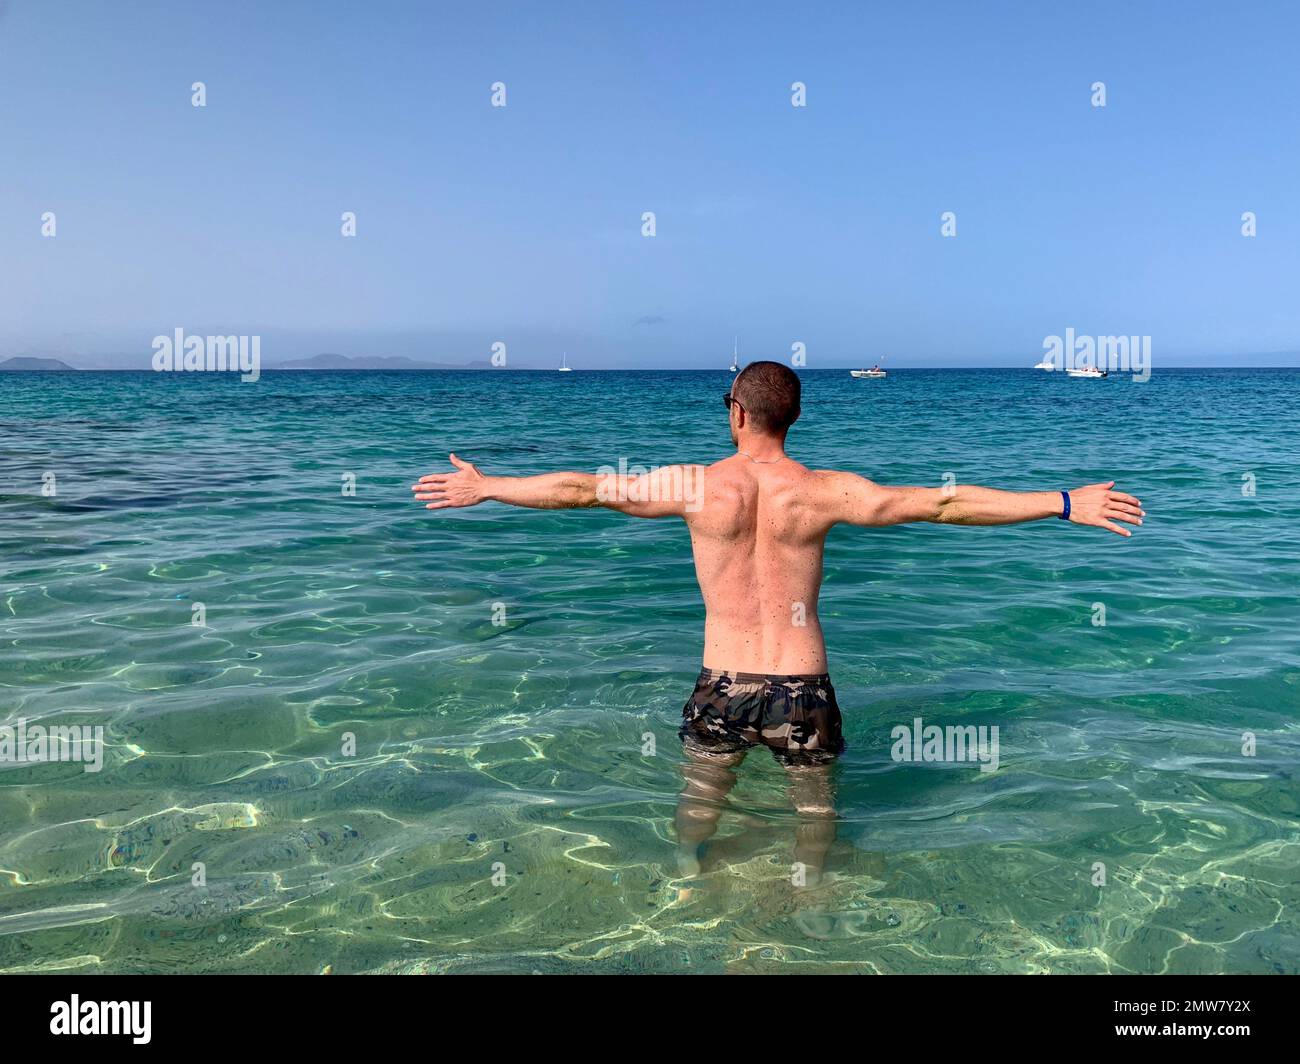 Homme aux bras ouverts comme signe de liberté. Bord de mer, immergé dans les eaux turquoise de la mer de Lanzarote. Banque D'Images